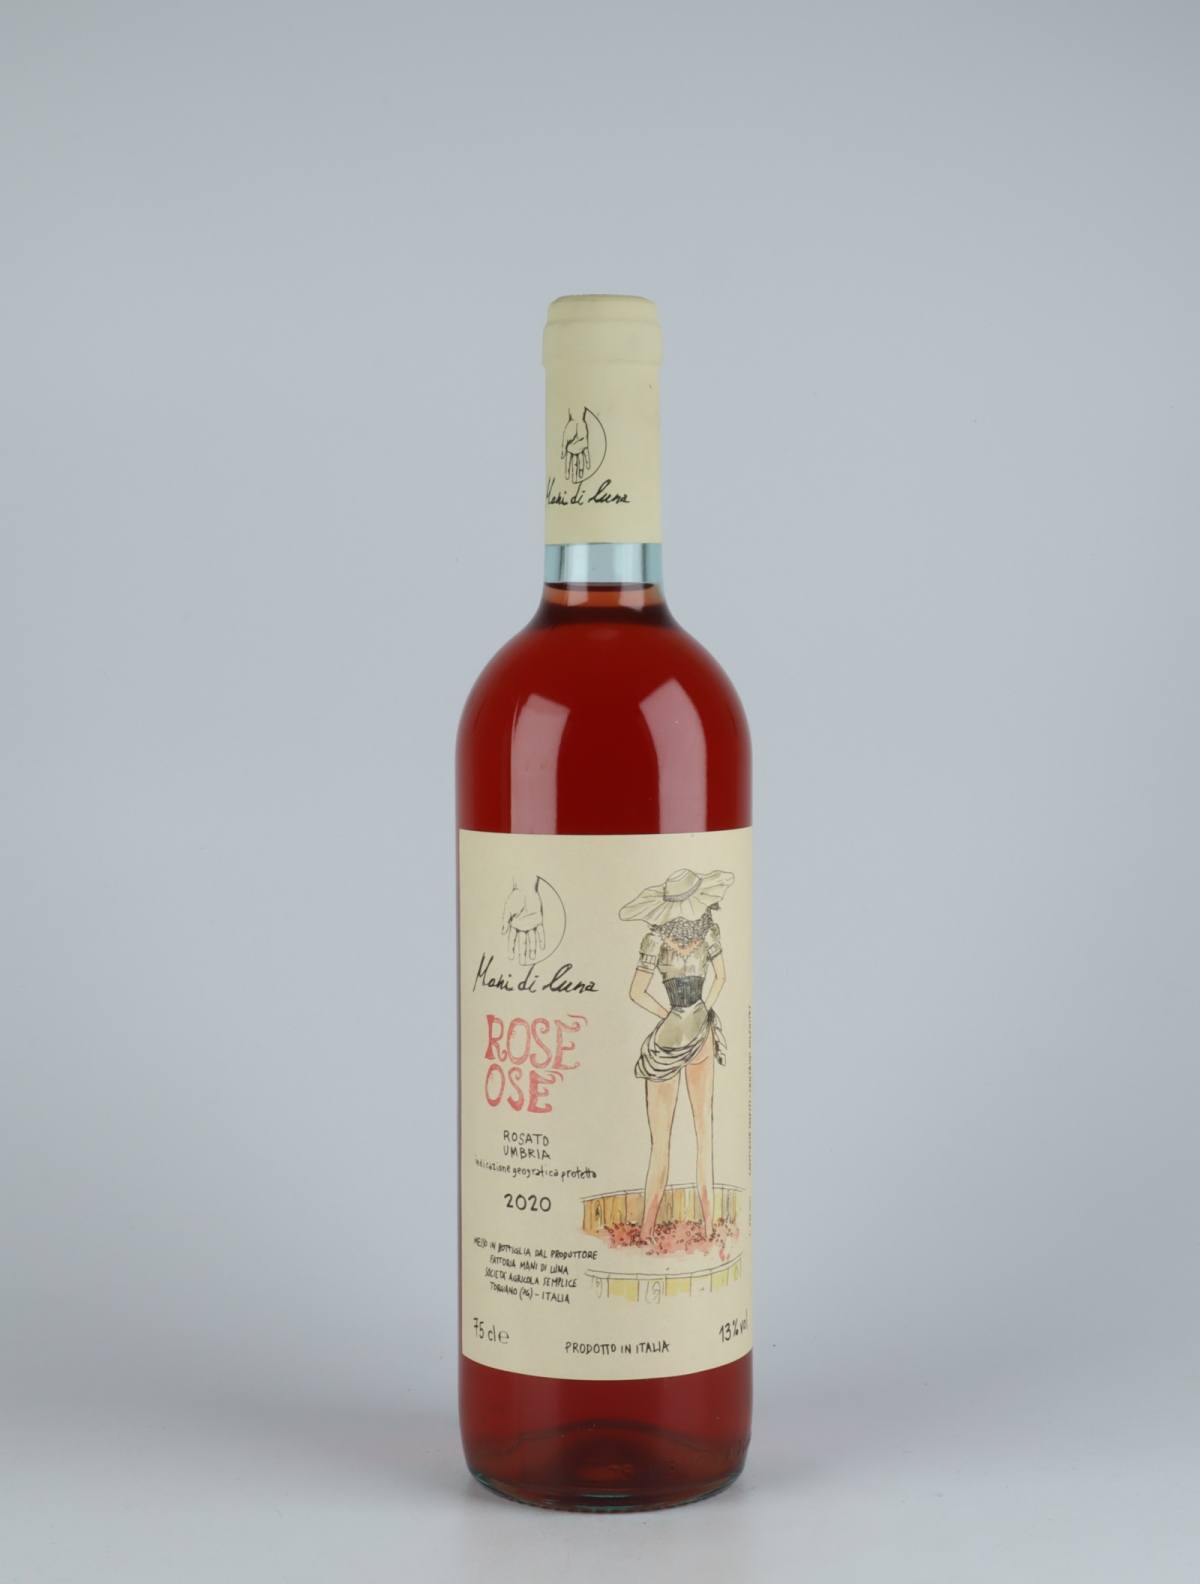 A bottle 2020 Rosè Osè Rosé from Mani di Luna, Umbria in Italy